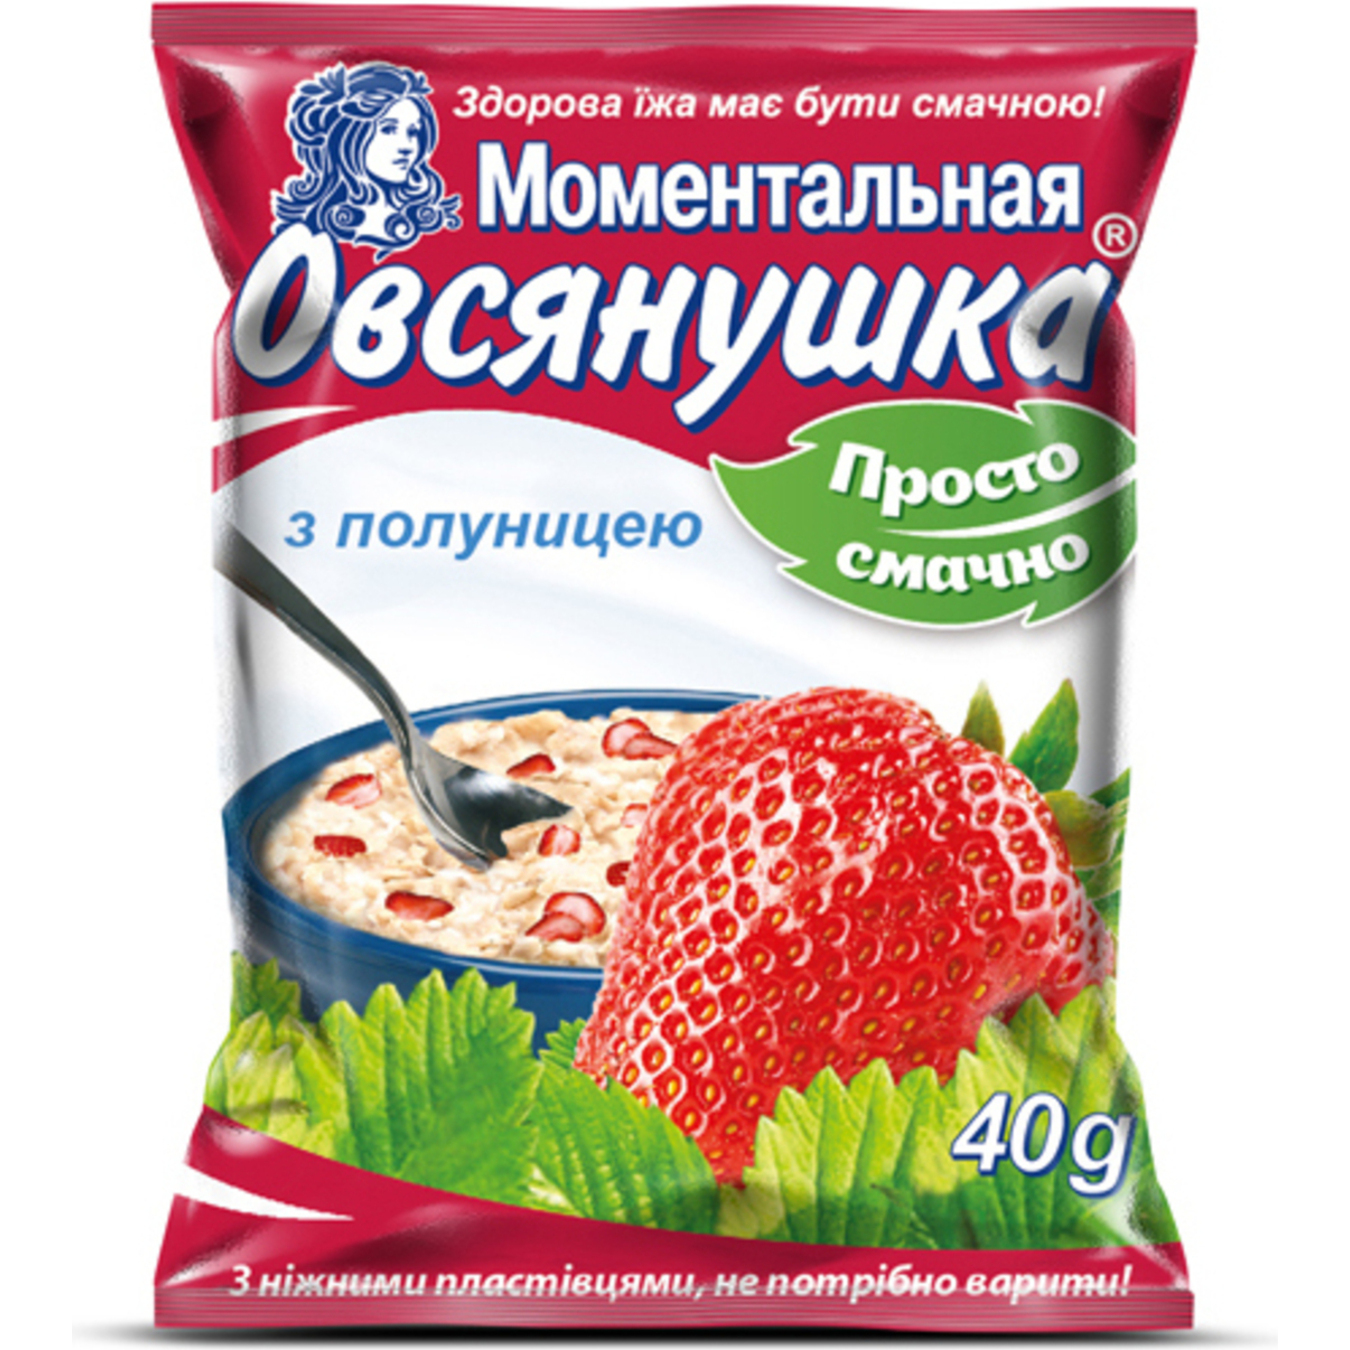 Porridge Oatmeal Ovsyanushka with Strawberries 40g